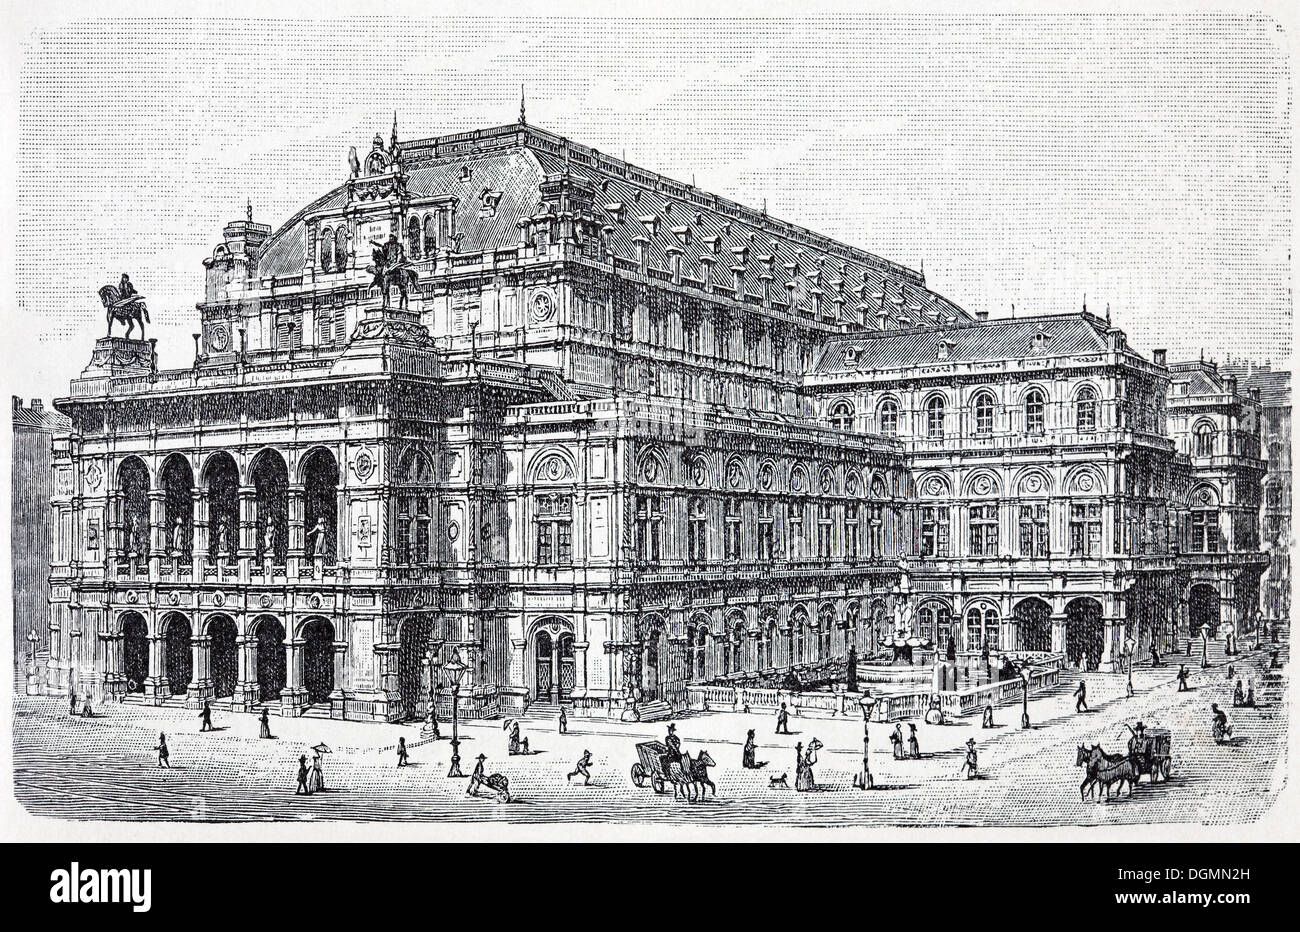 Opernhaus, Ringstraße, Wien, Österreich, historische Buchillustration aus dem 19. Jahrhundert, Stahlstich Stockfoto